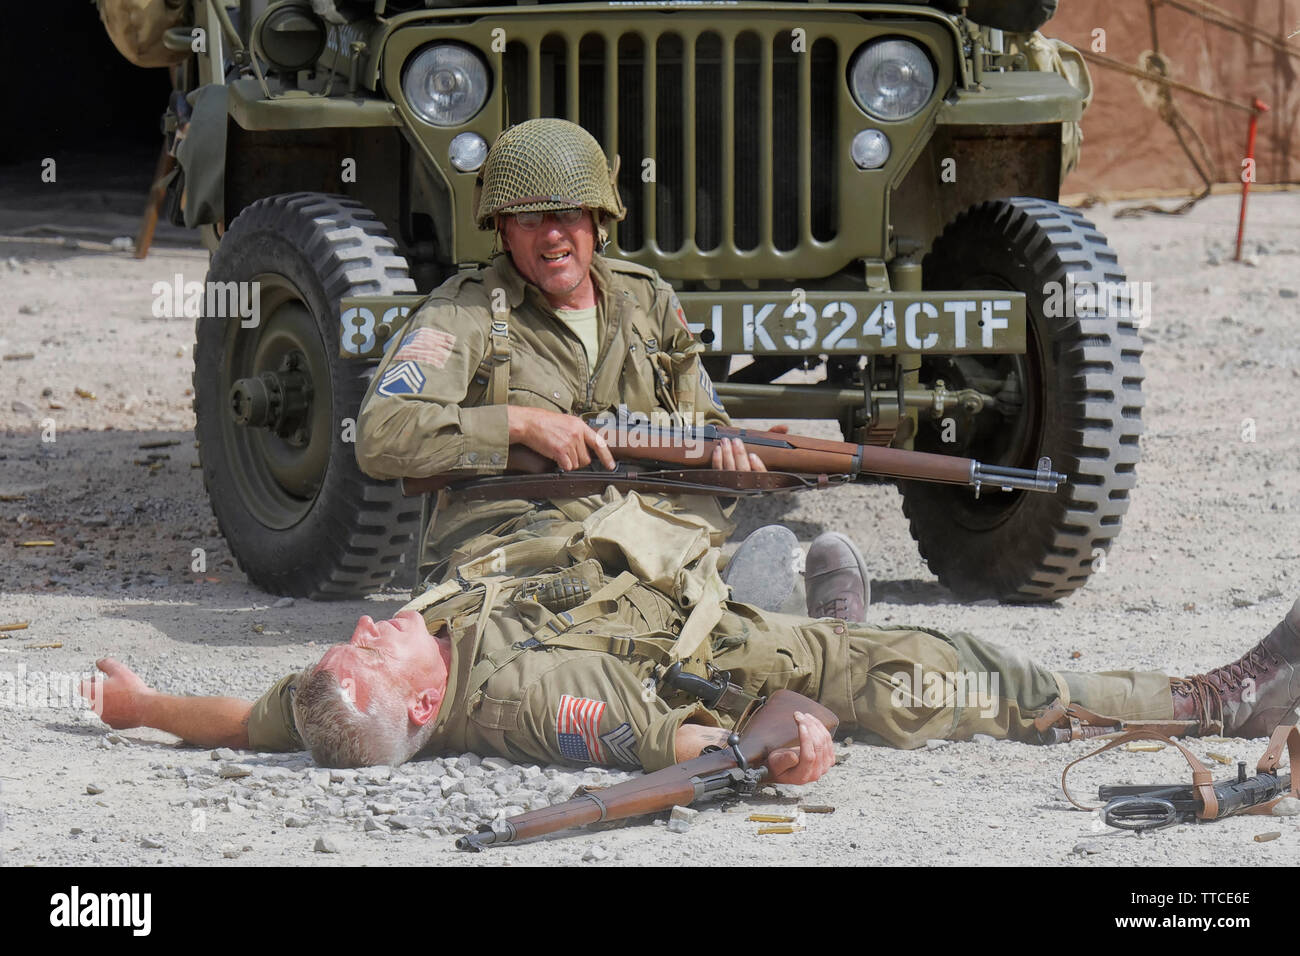 Reenactor habillé comme un soldat de l'Armée U.S 82nd Airborne "tous Américains" assis en face d'une Jeep Banque D'Images